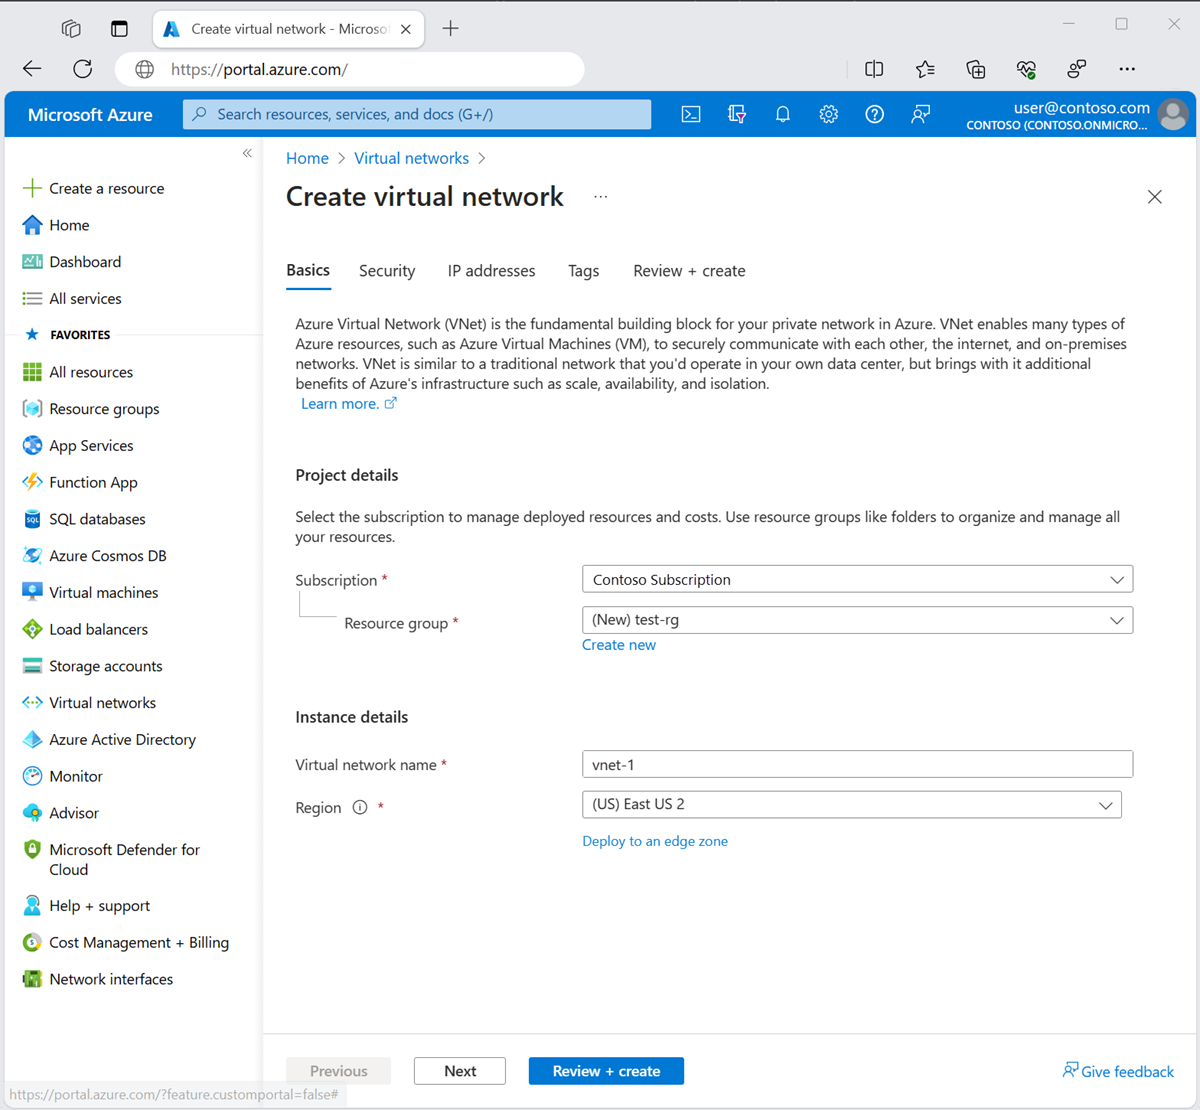 لقطة شاشة لعلامة التبويب Basics لإنشاء شبكة ظاهرية في مدخل Microsoft Azure.